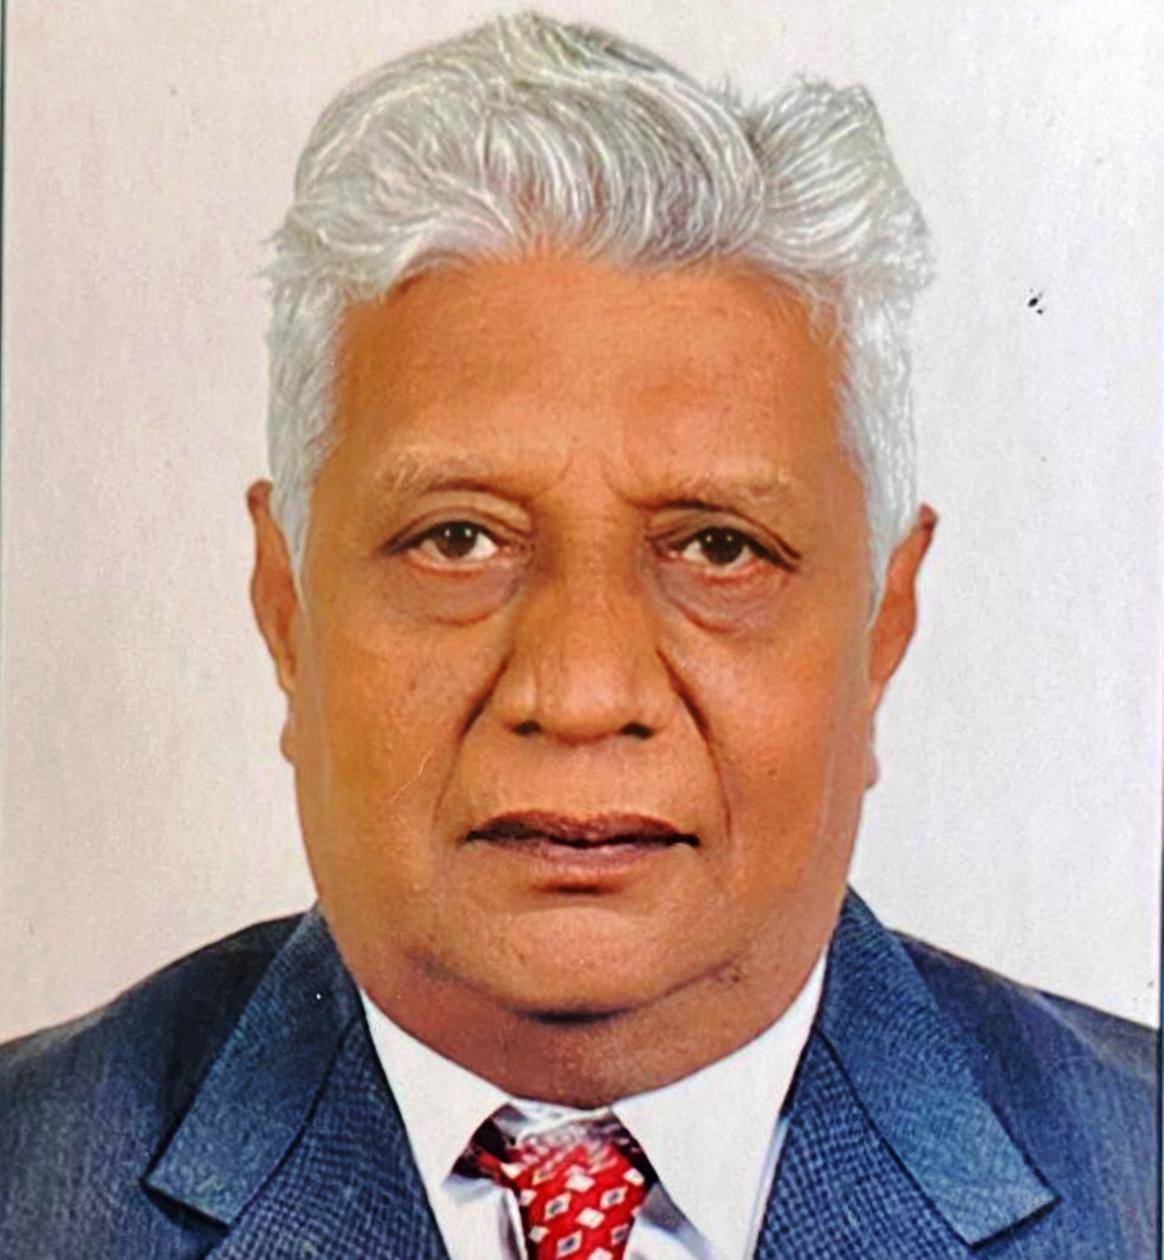 गुजरात के पूर्व उप राज्यपाल दीपक वखारिया गुजरात के कार्याध्यक्ष मनोनीत